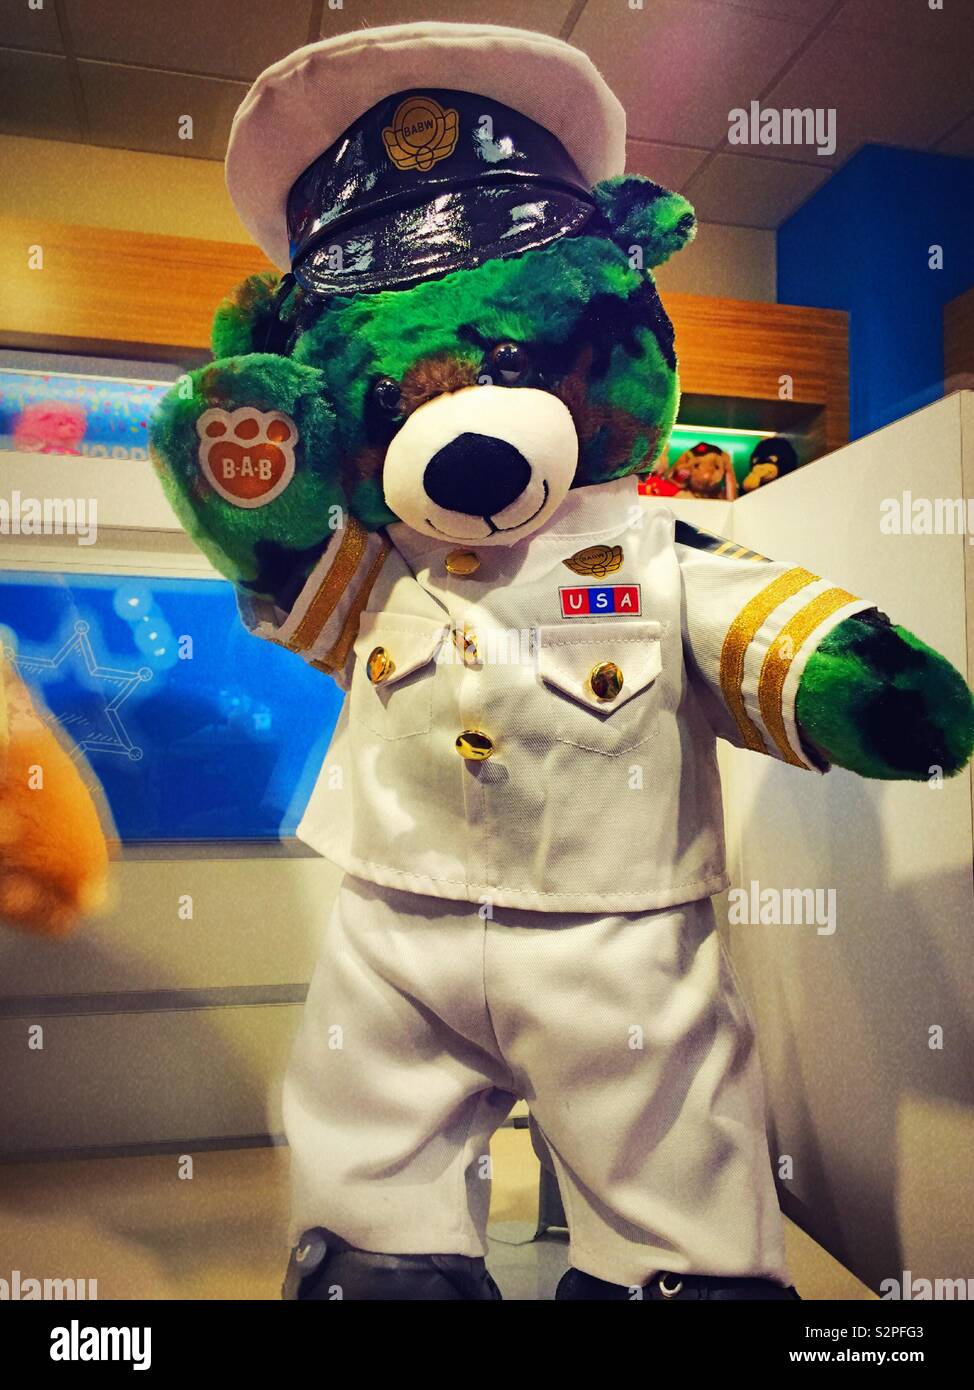 Sailor nautical themed teddy bear at build a bear, USA Stock Photo